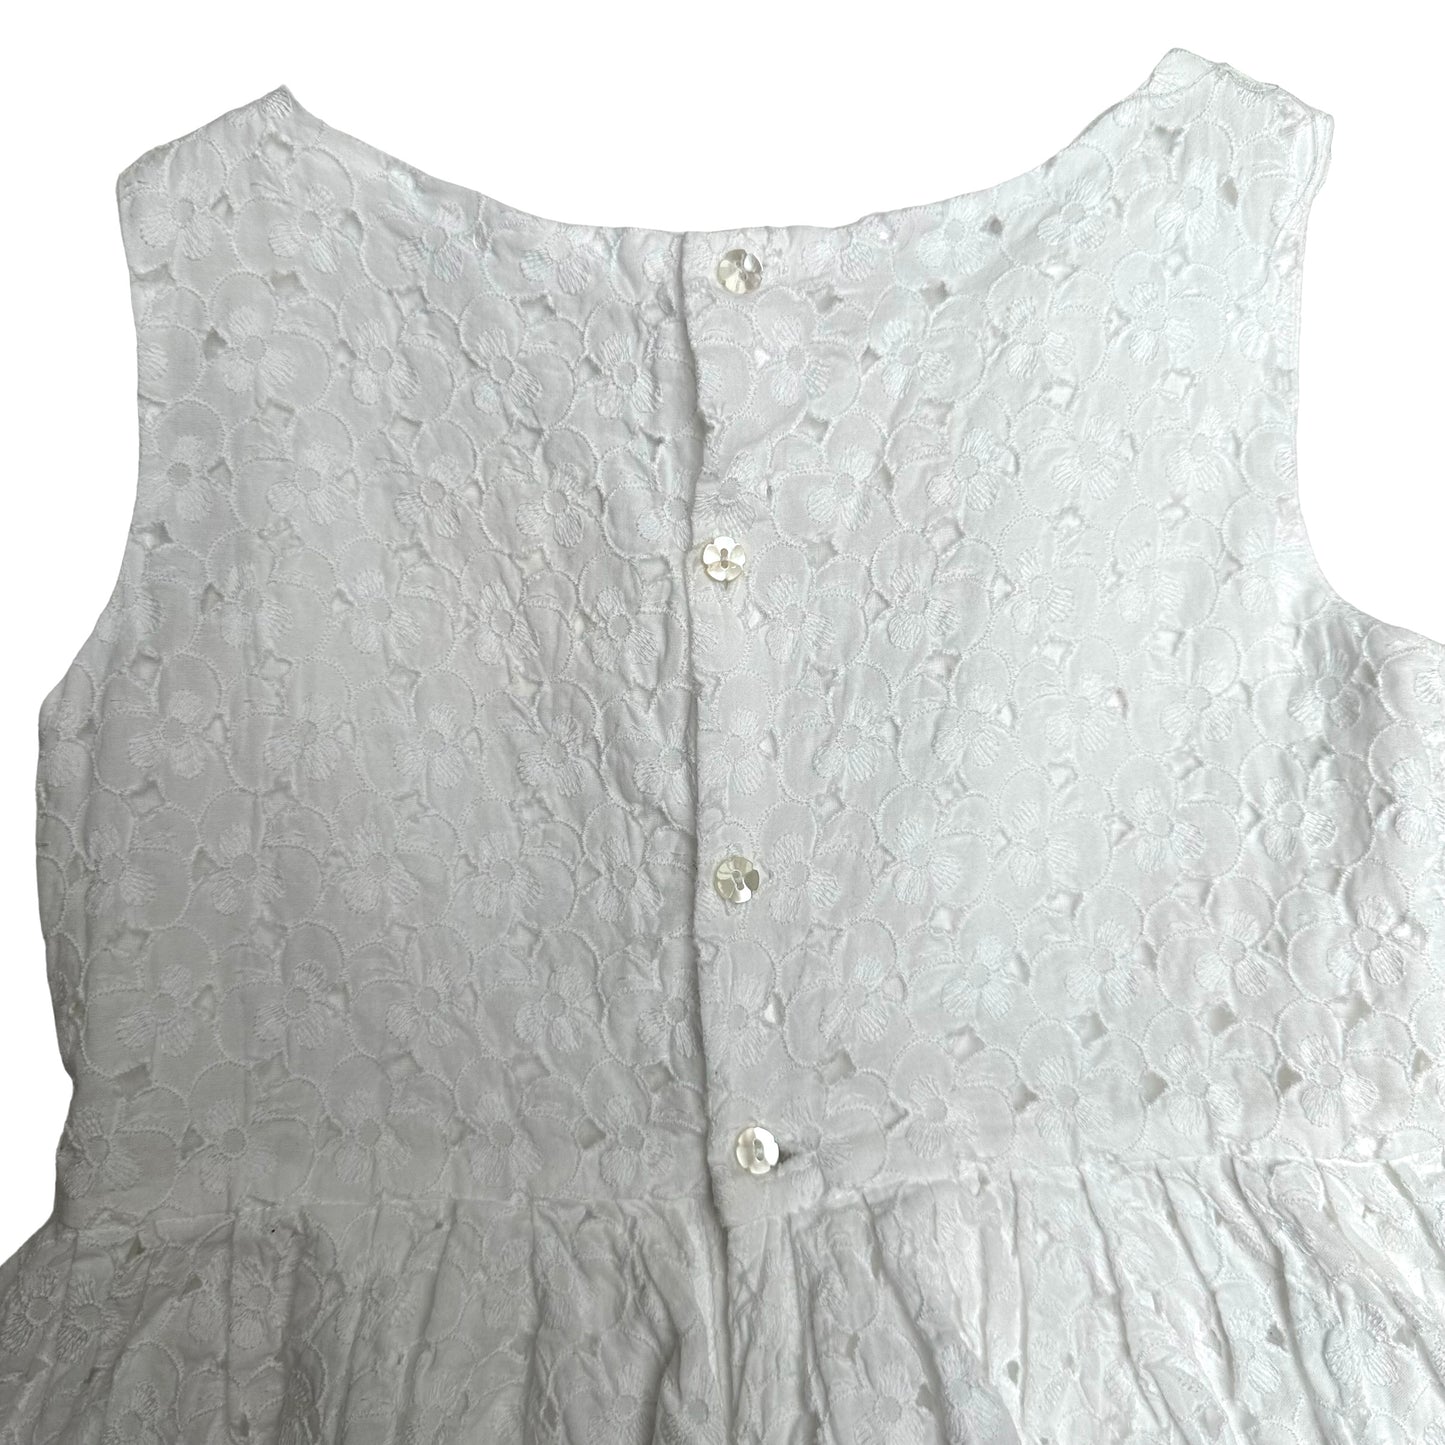 White Less Girl's Dress - 6yo.